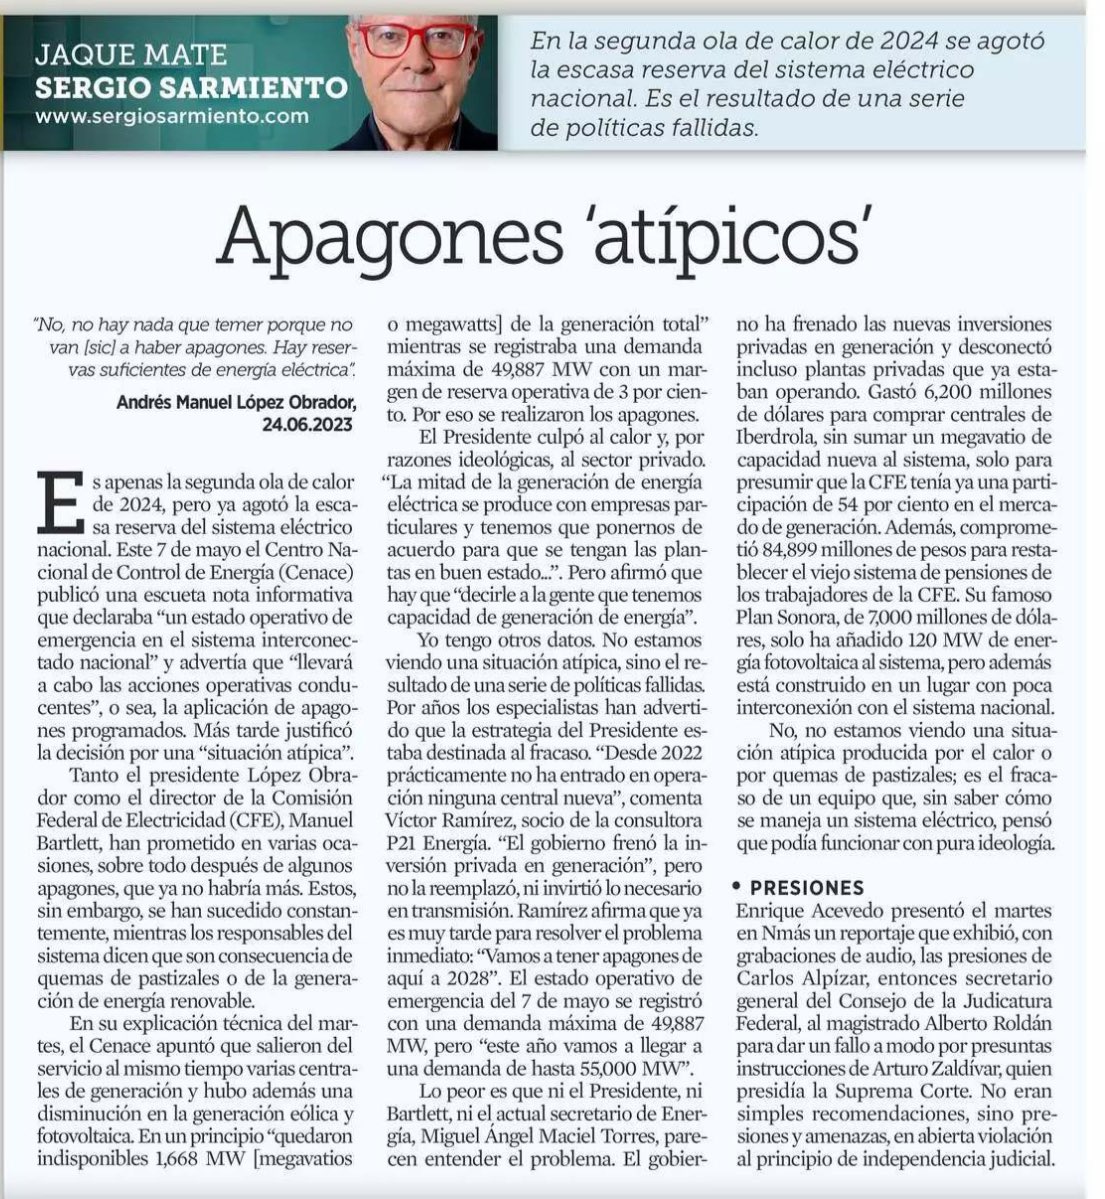 Hoy @SergioSarmiento me cita en su columna en @Reforma Y si, si las cosas se hacen bien, tendremos 4 años más de apagones. Si no se hacen bien, súmele años.